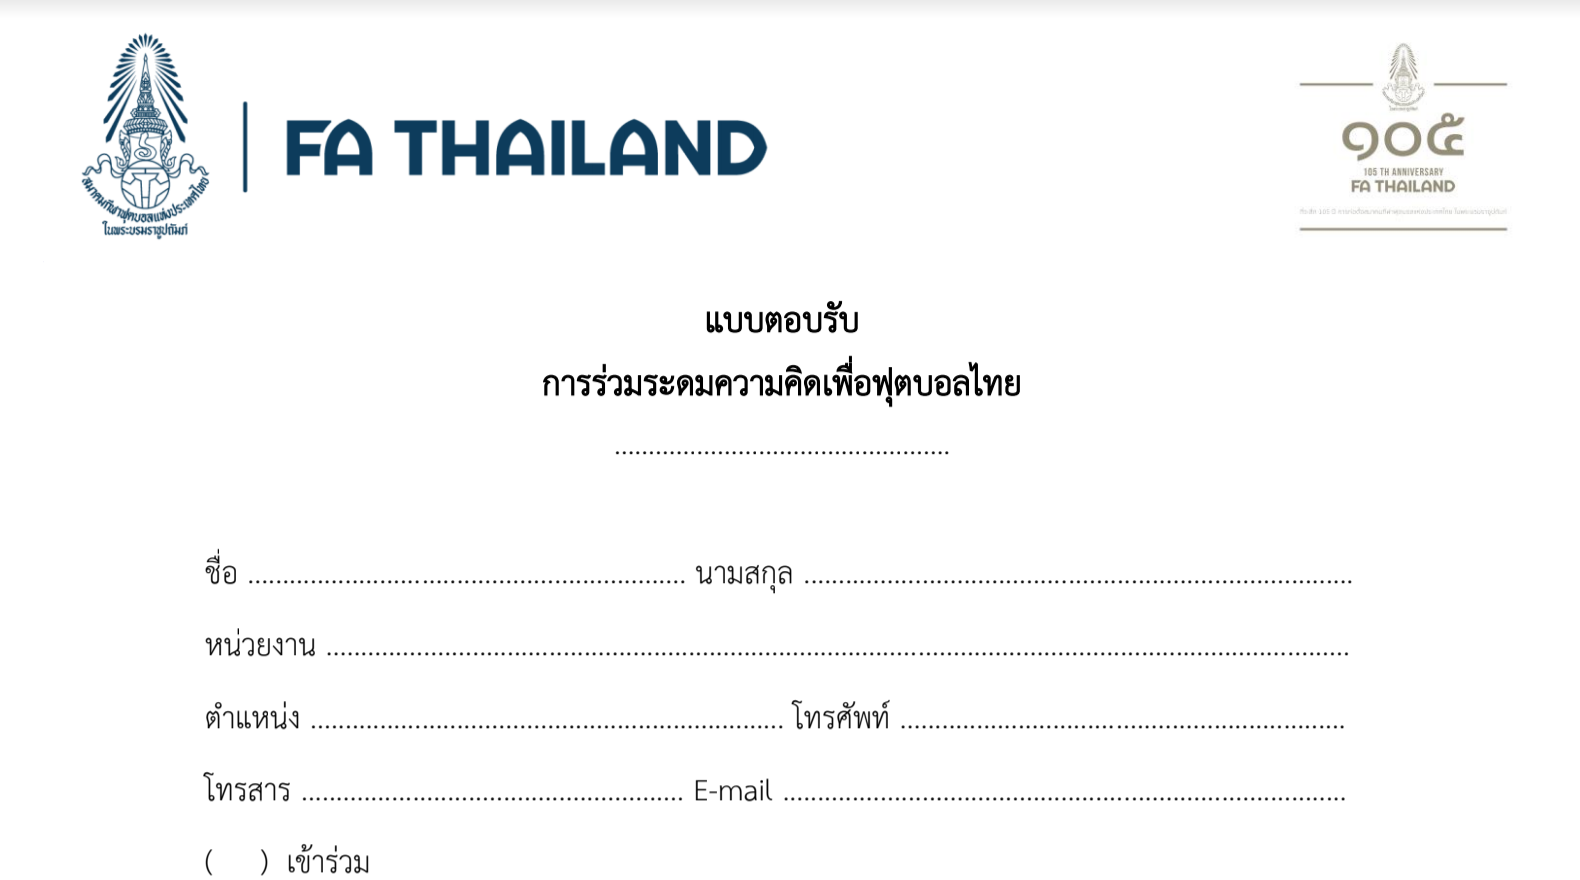 Liên đoàn bóng đá Thái Lan gửi 'tâm thư' mời chuyên gia cứu vãn nền bóng đá nước nhà